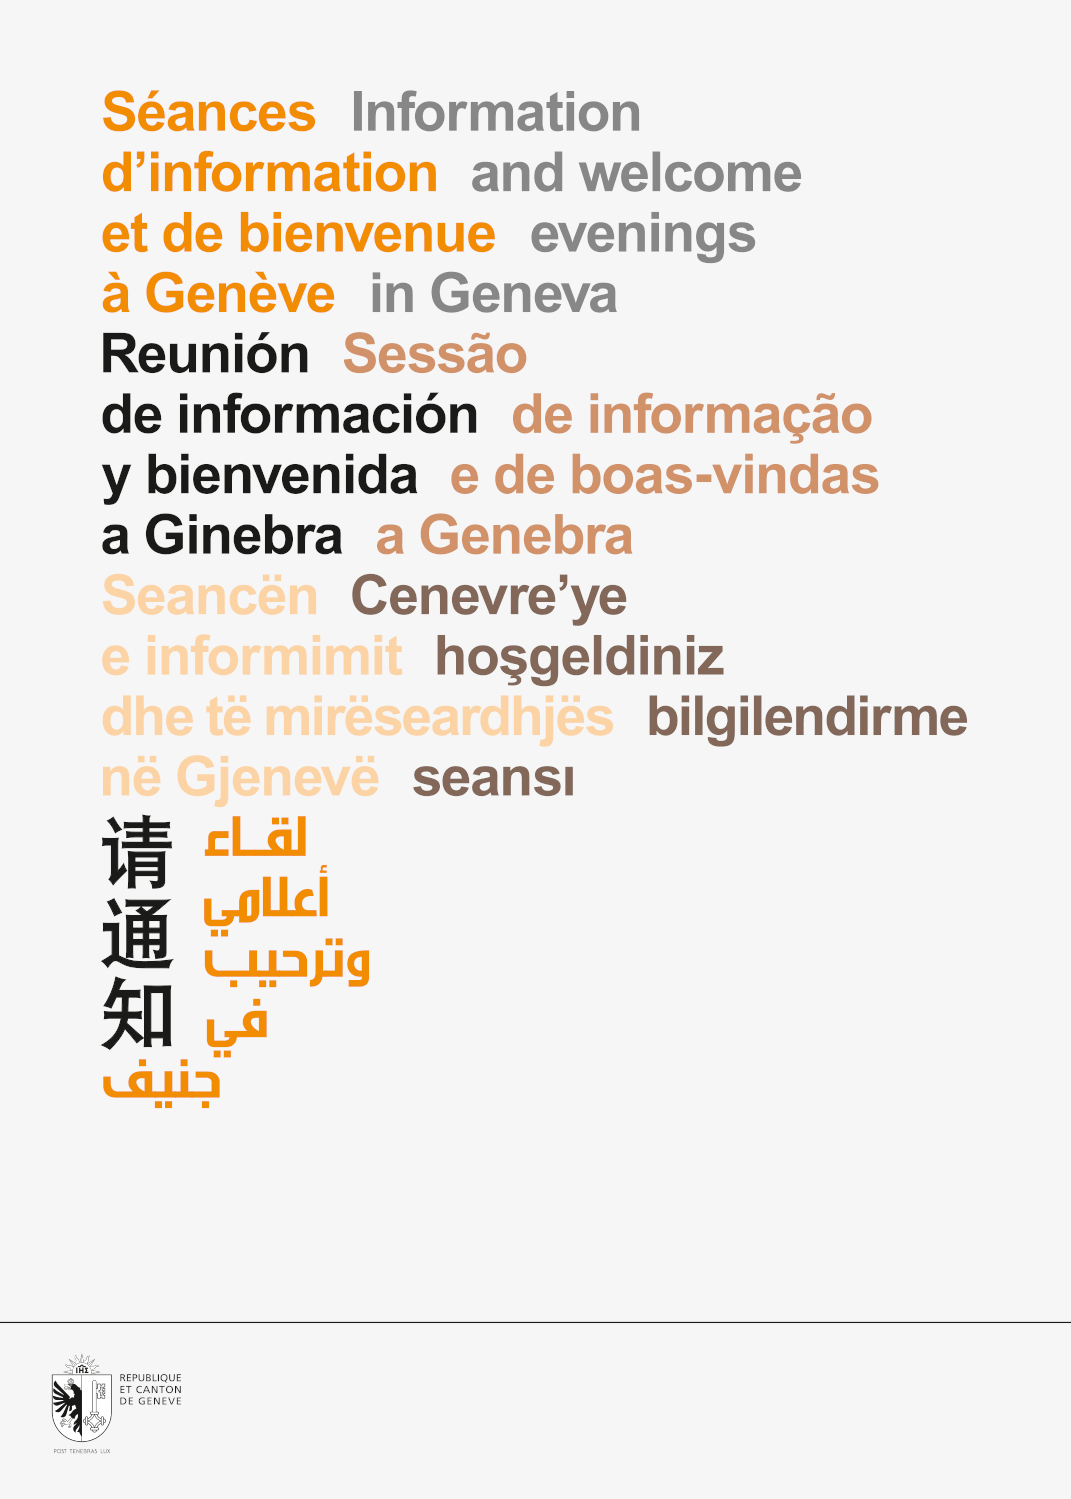 Dépliant en 8 langues qui invite les étrangers à une séance de bienvenue/information. La mise en page en arabe et chinois était intéressante à faire. En tant que Schönherwehrs.